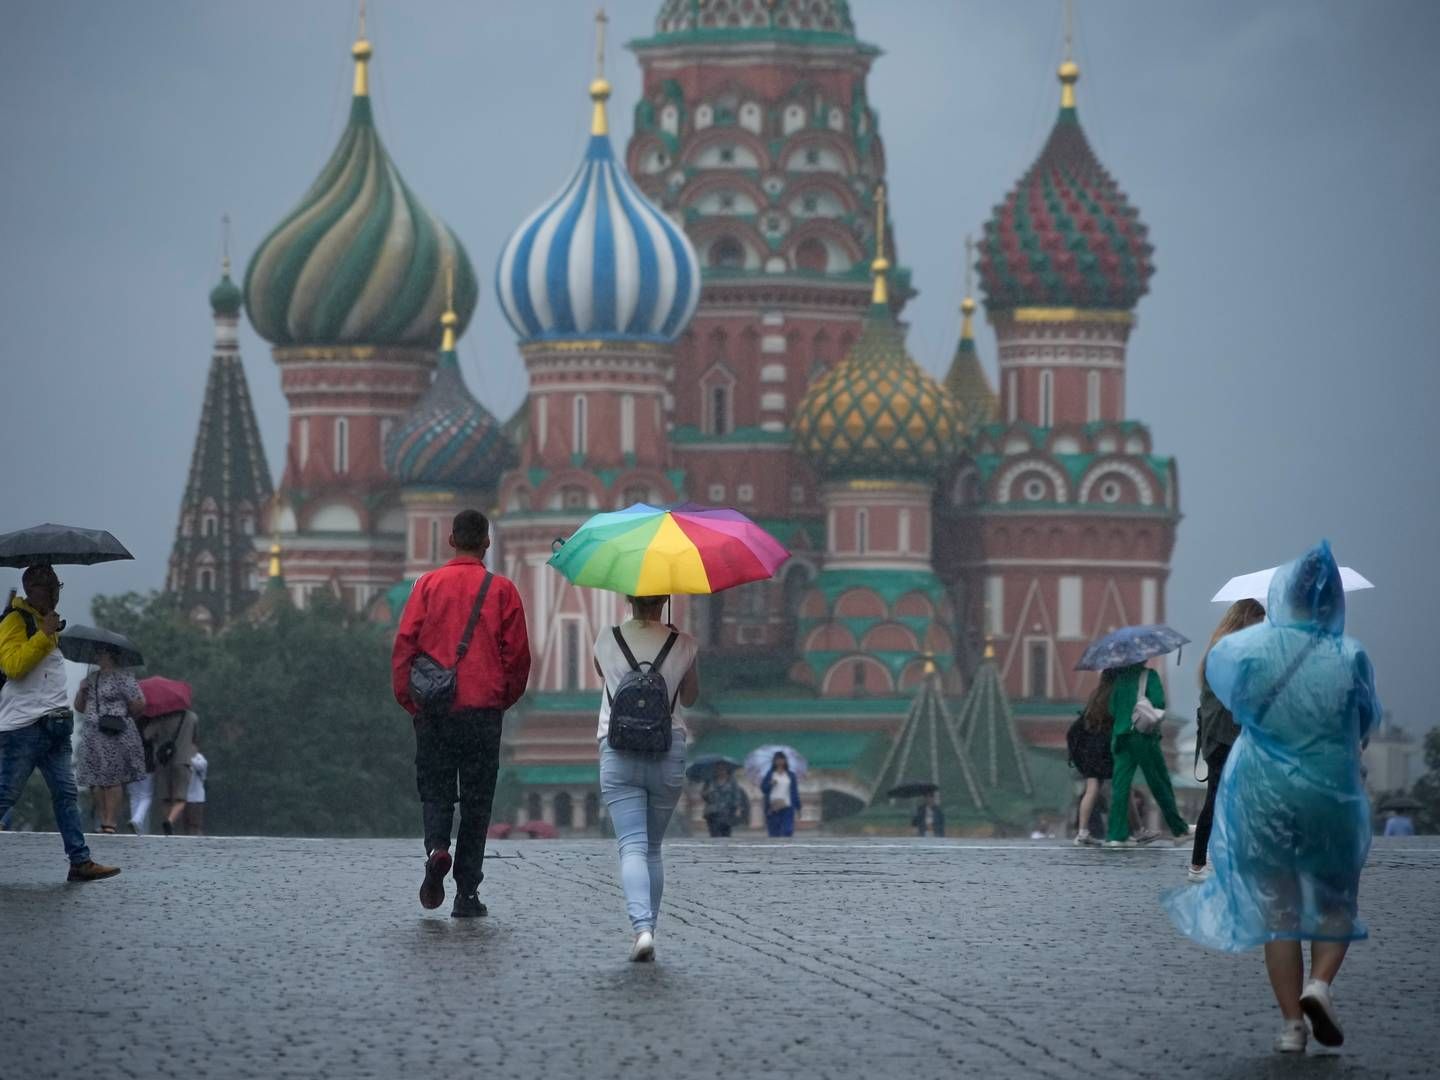 Russland har hevet styringsrenten seks ganger på litt over ett år for å håndtere den høye inflasjonen. | Foto: Aleksander Zemlianitsjenko / AP / NTB